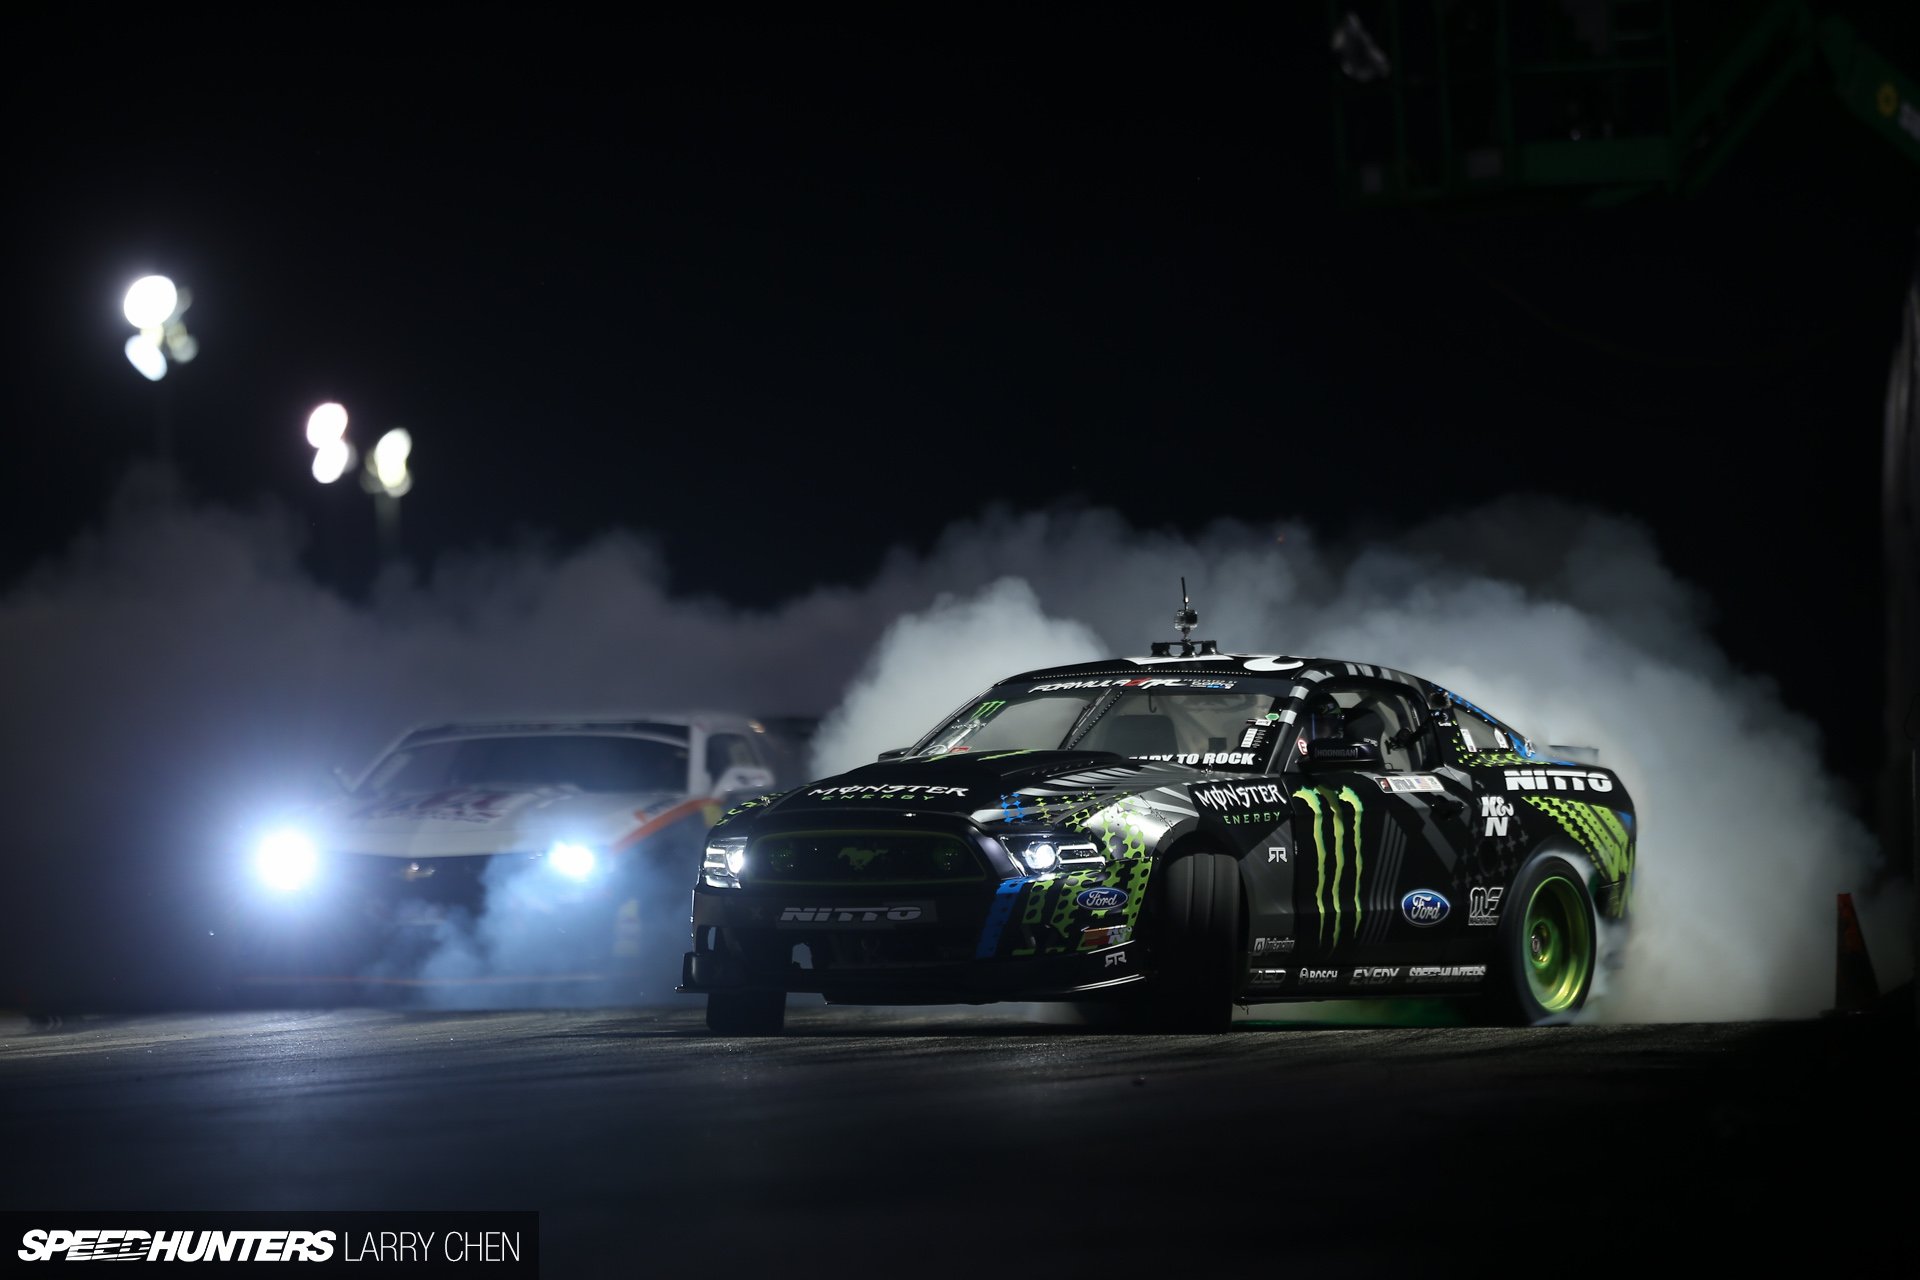 ford, Mustang, Rtr, Monster, Energy, Drift, Race, Racing Wallpaper